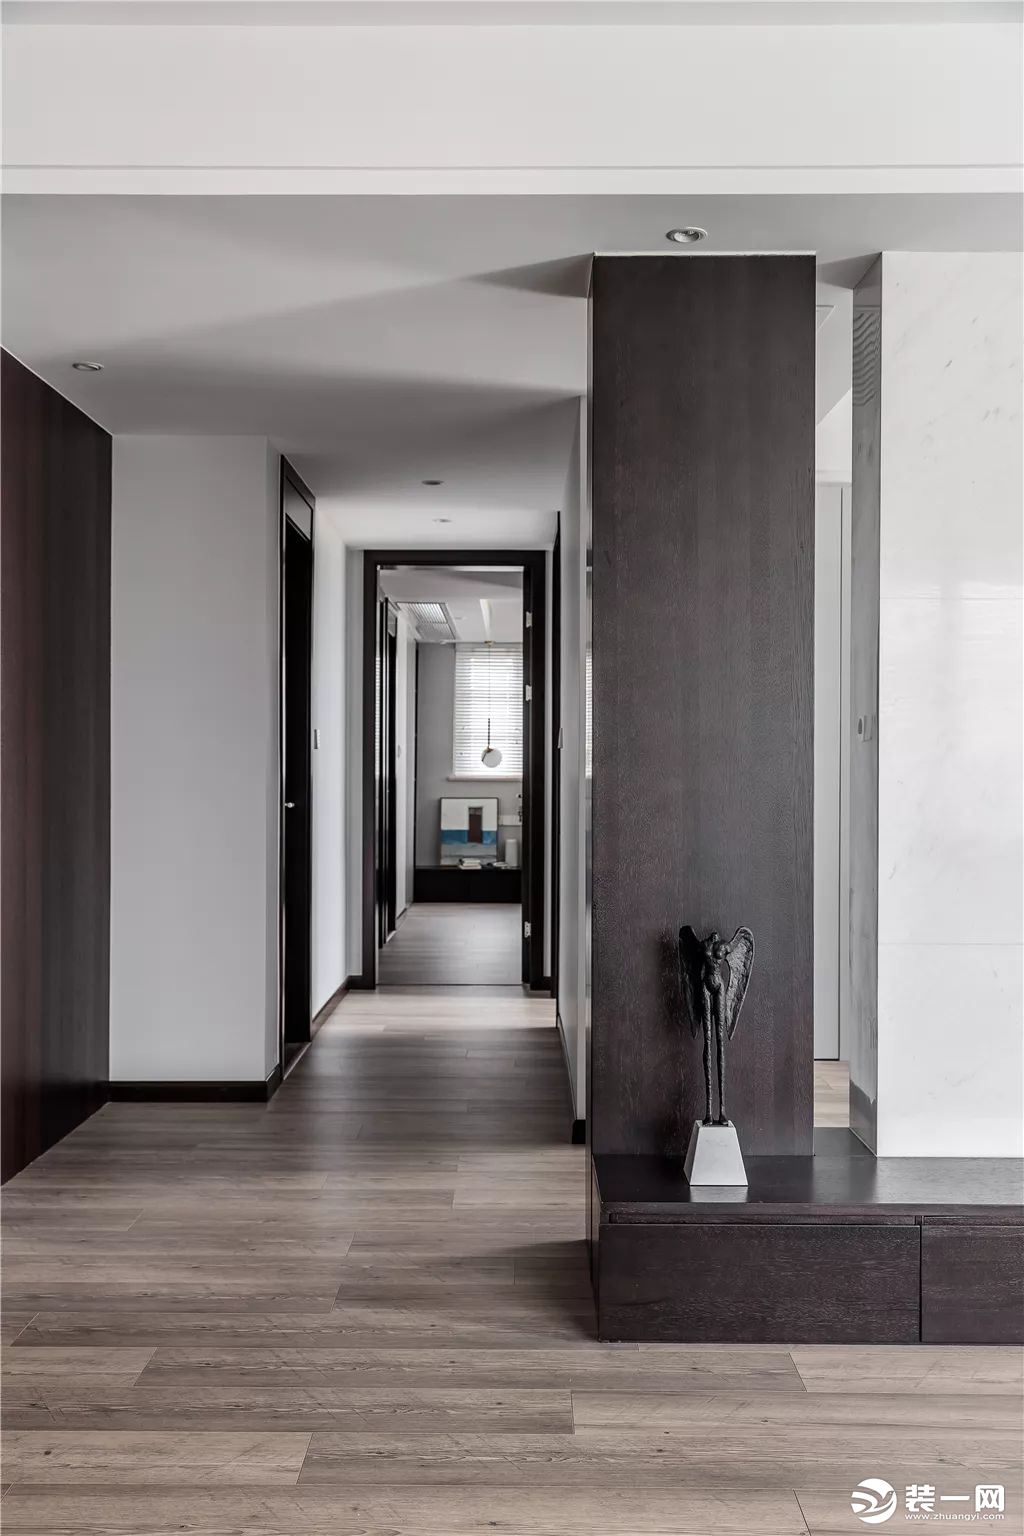 10▲过道在简约现代的空间基础，搭配木质感的墙面与门框，使得空间充满优雅端庄的氛围感。